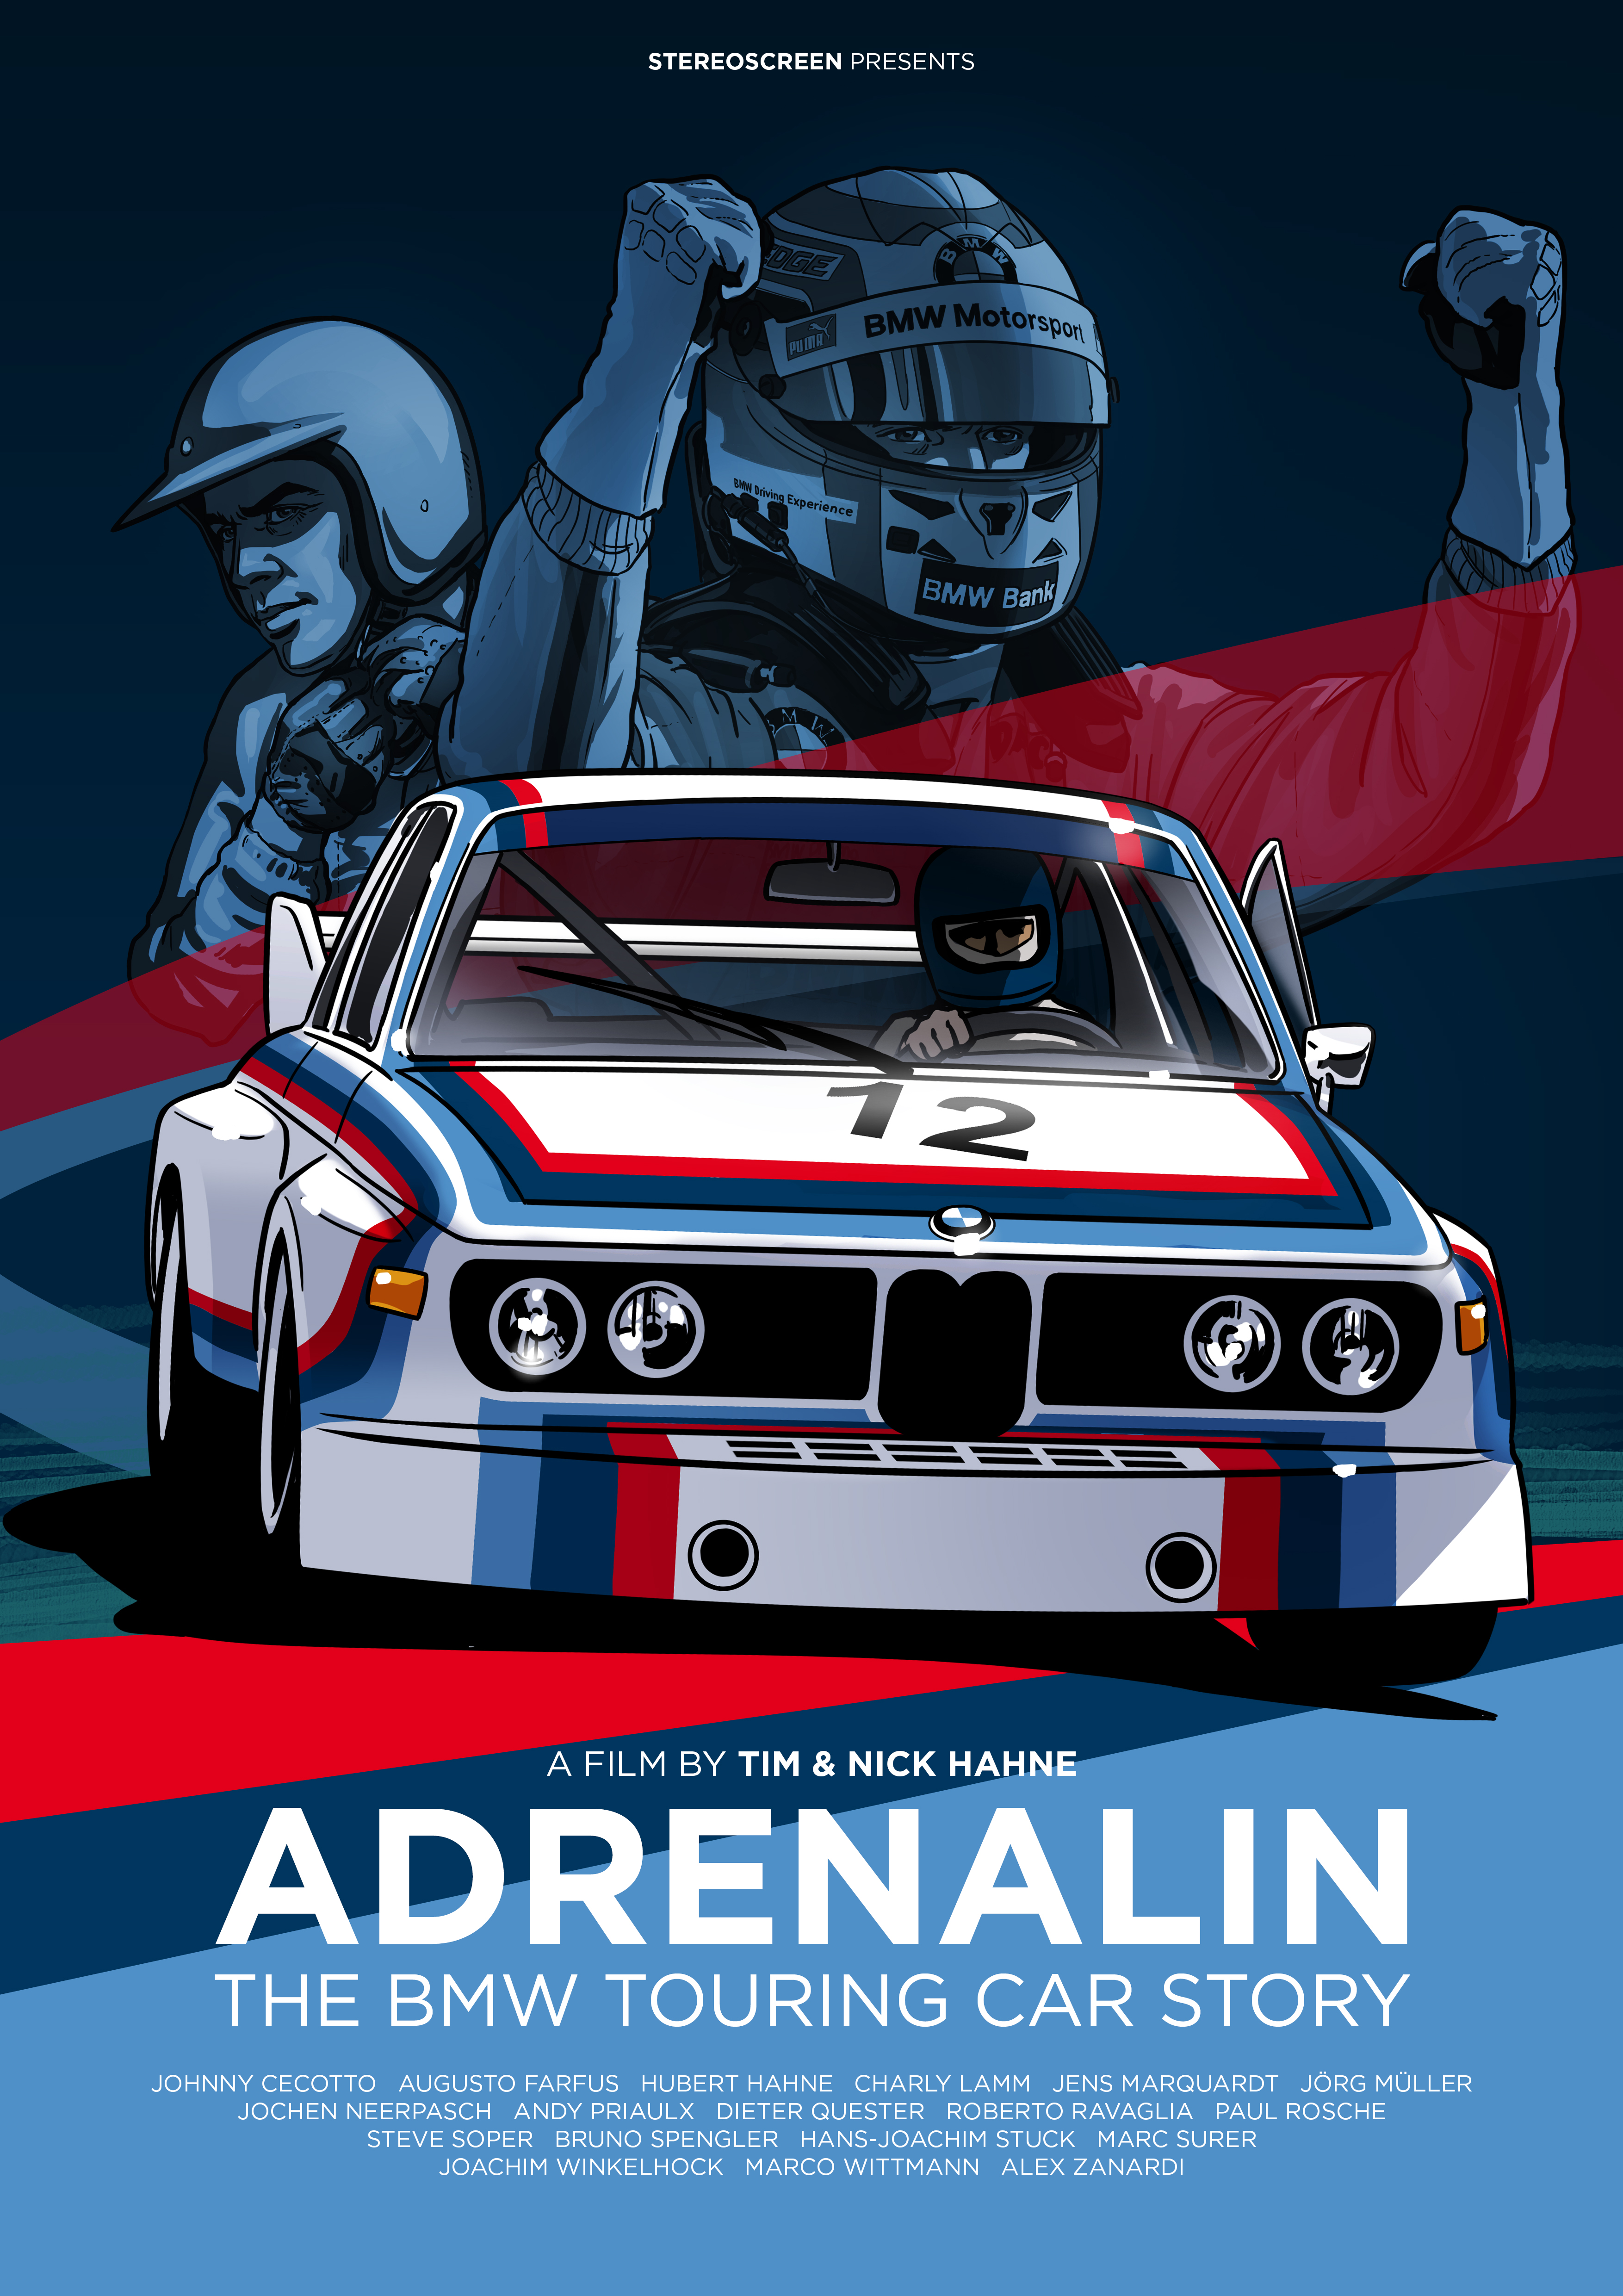 ADRENALIN, legendarul documentar despre istoria BMW în motorsport, acum disponibil cu subtitrări în limba română